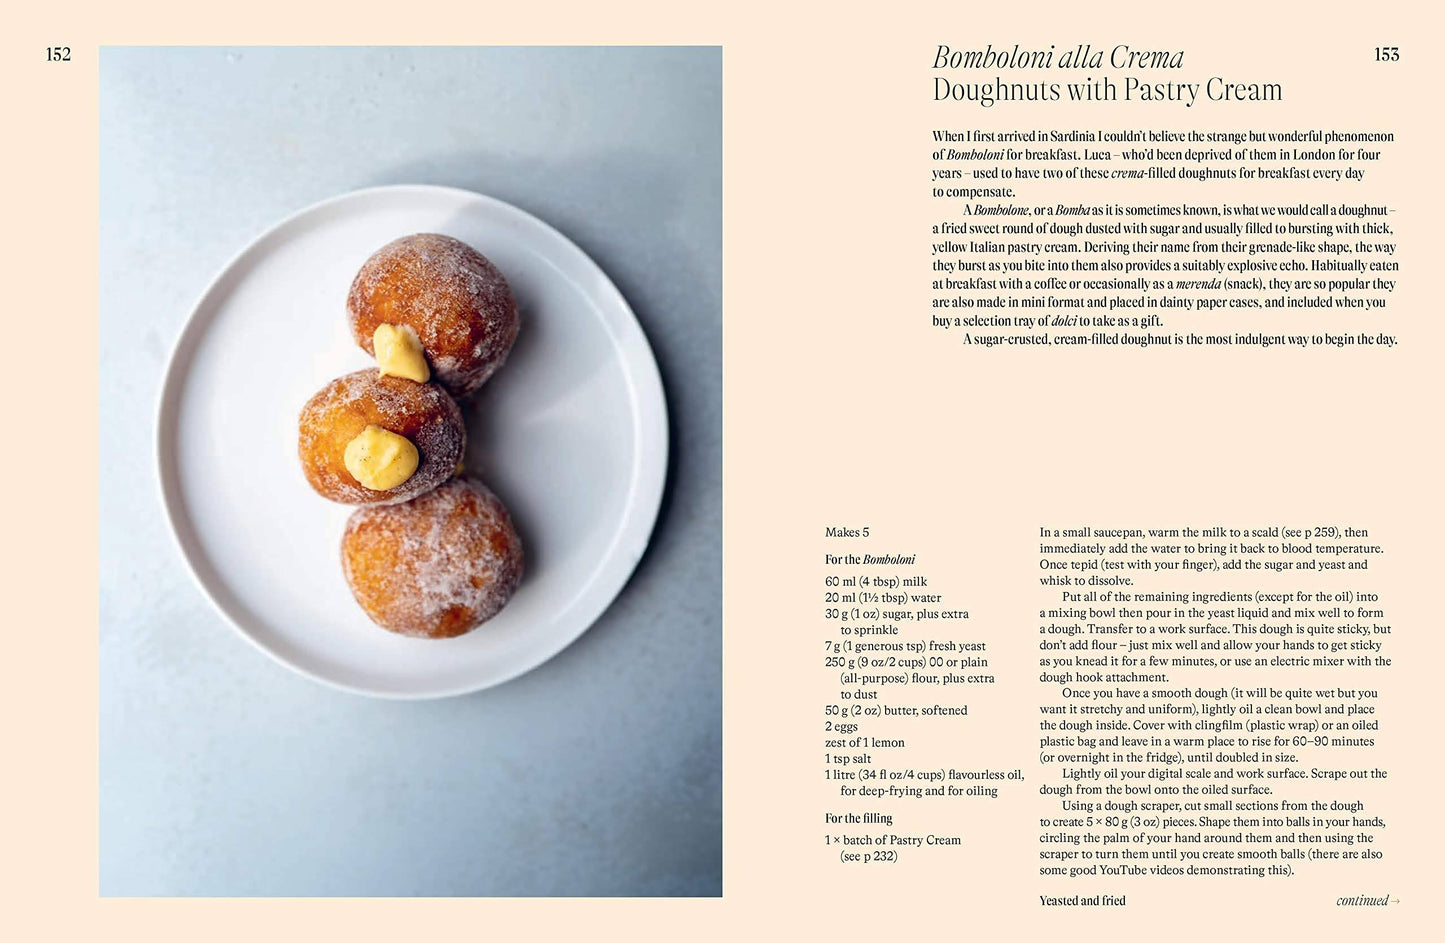 La Vita e Dolce : Italian-Inspired Desserts, Letitia Clark